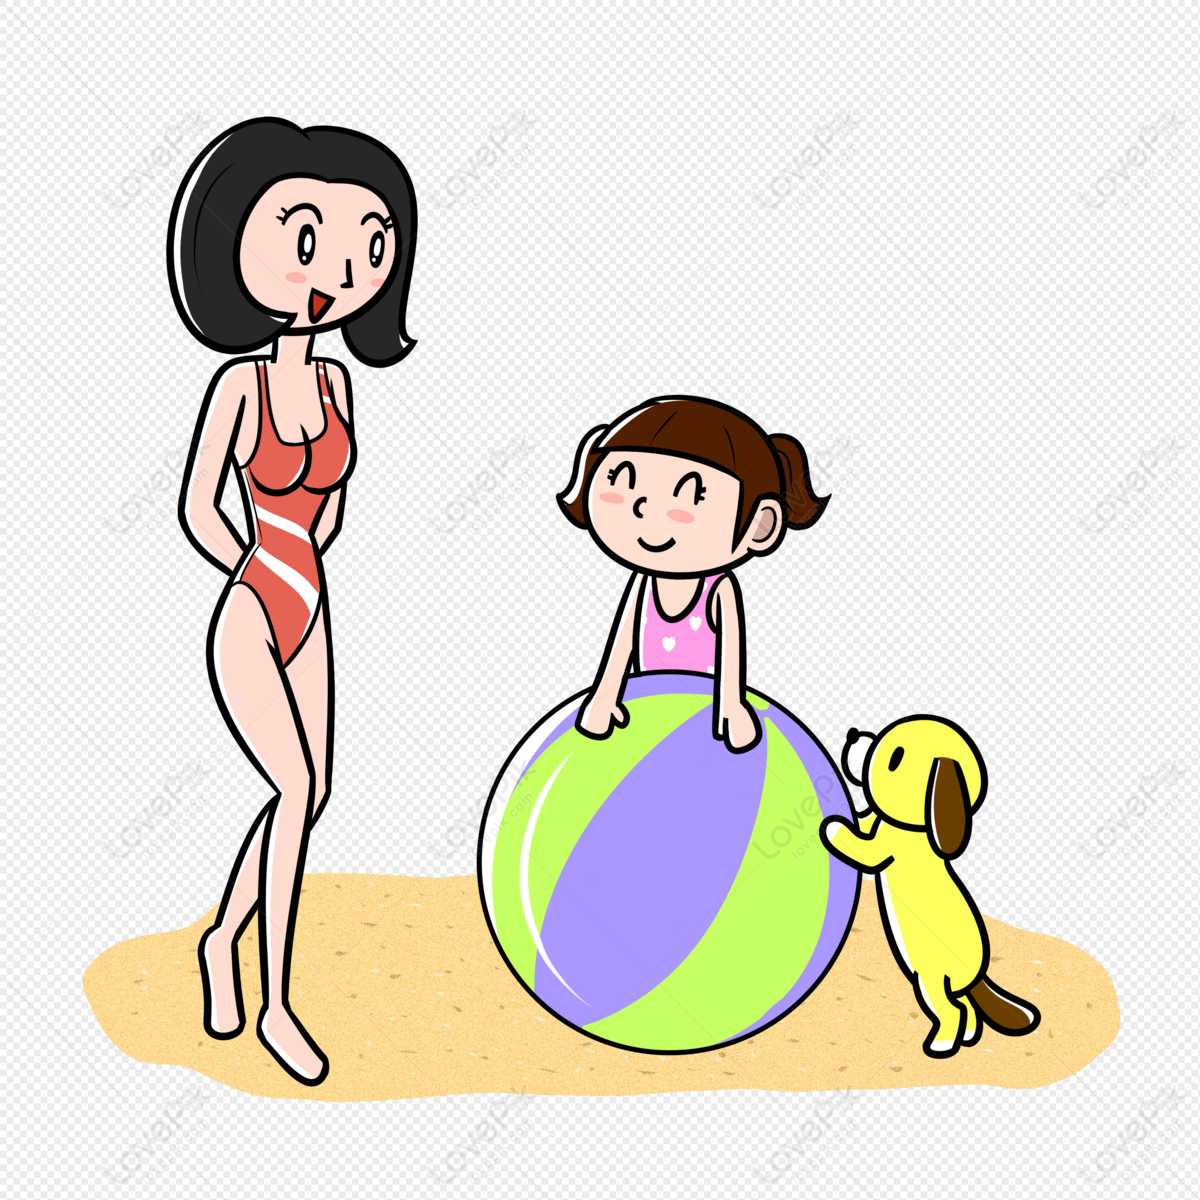 Mom balls. Mother Bikini Графика. Спорт а ну-ка мамочки на прозрачном фоне. Рисунок на тему как мама играет с дочкой в мячик. Картинки в карандаше где мама играет с дочками в мяч.